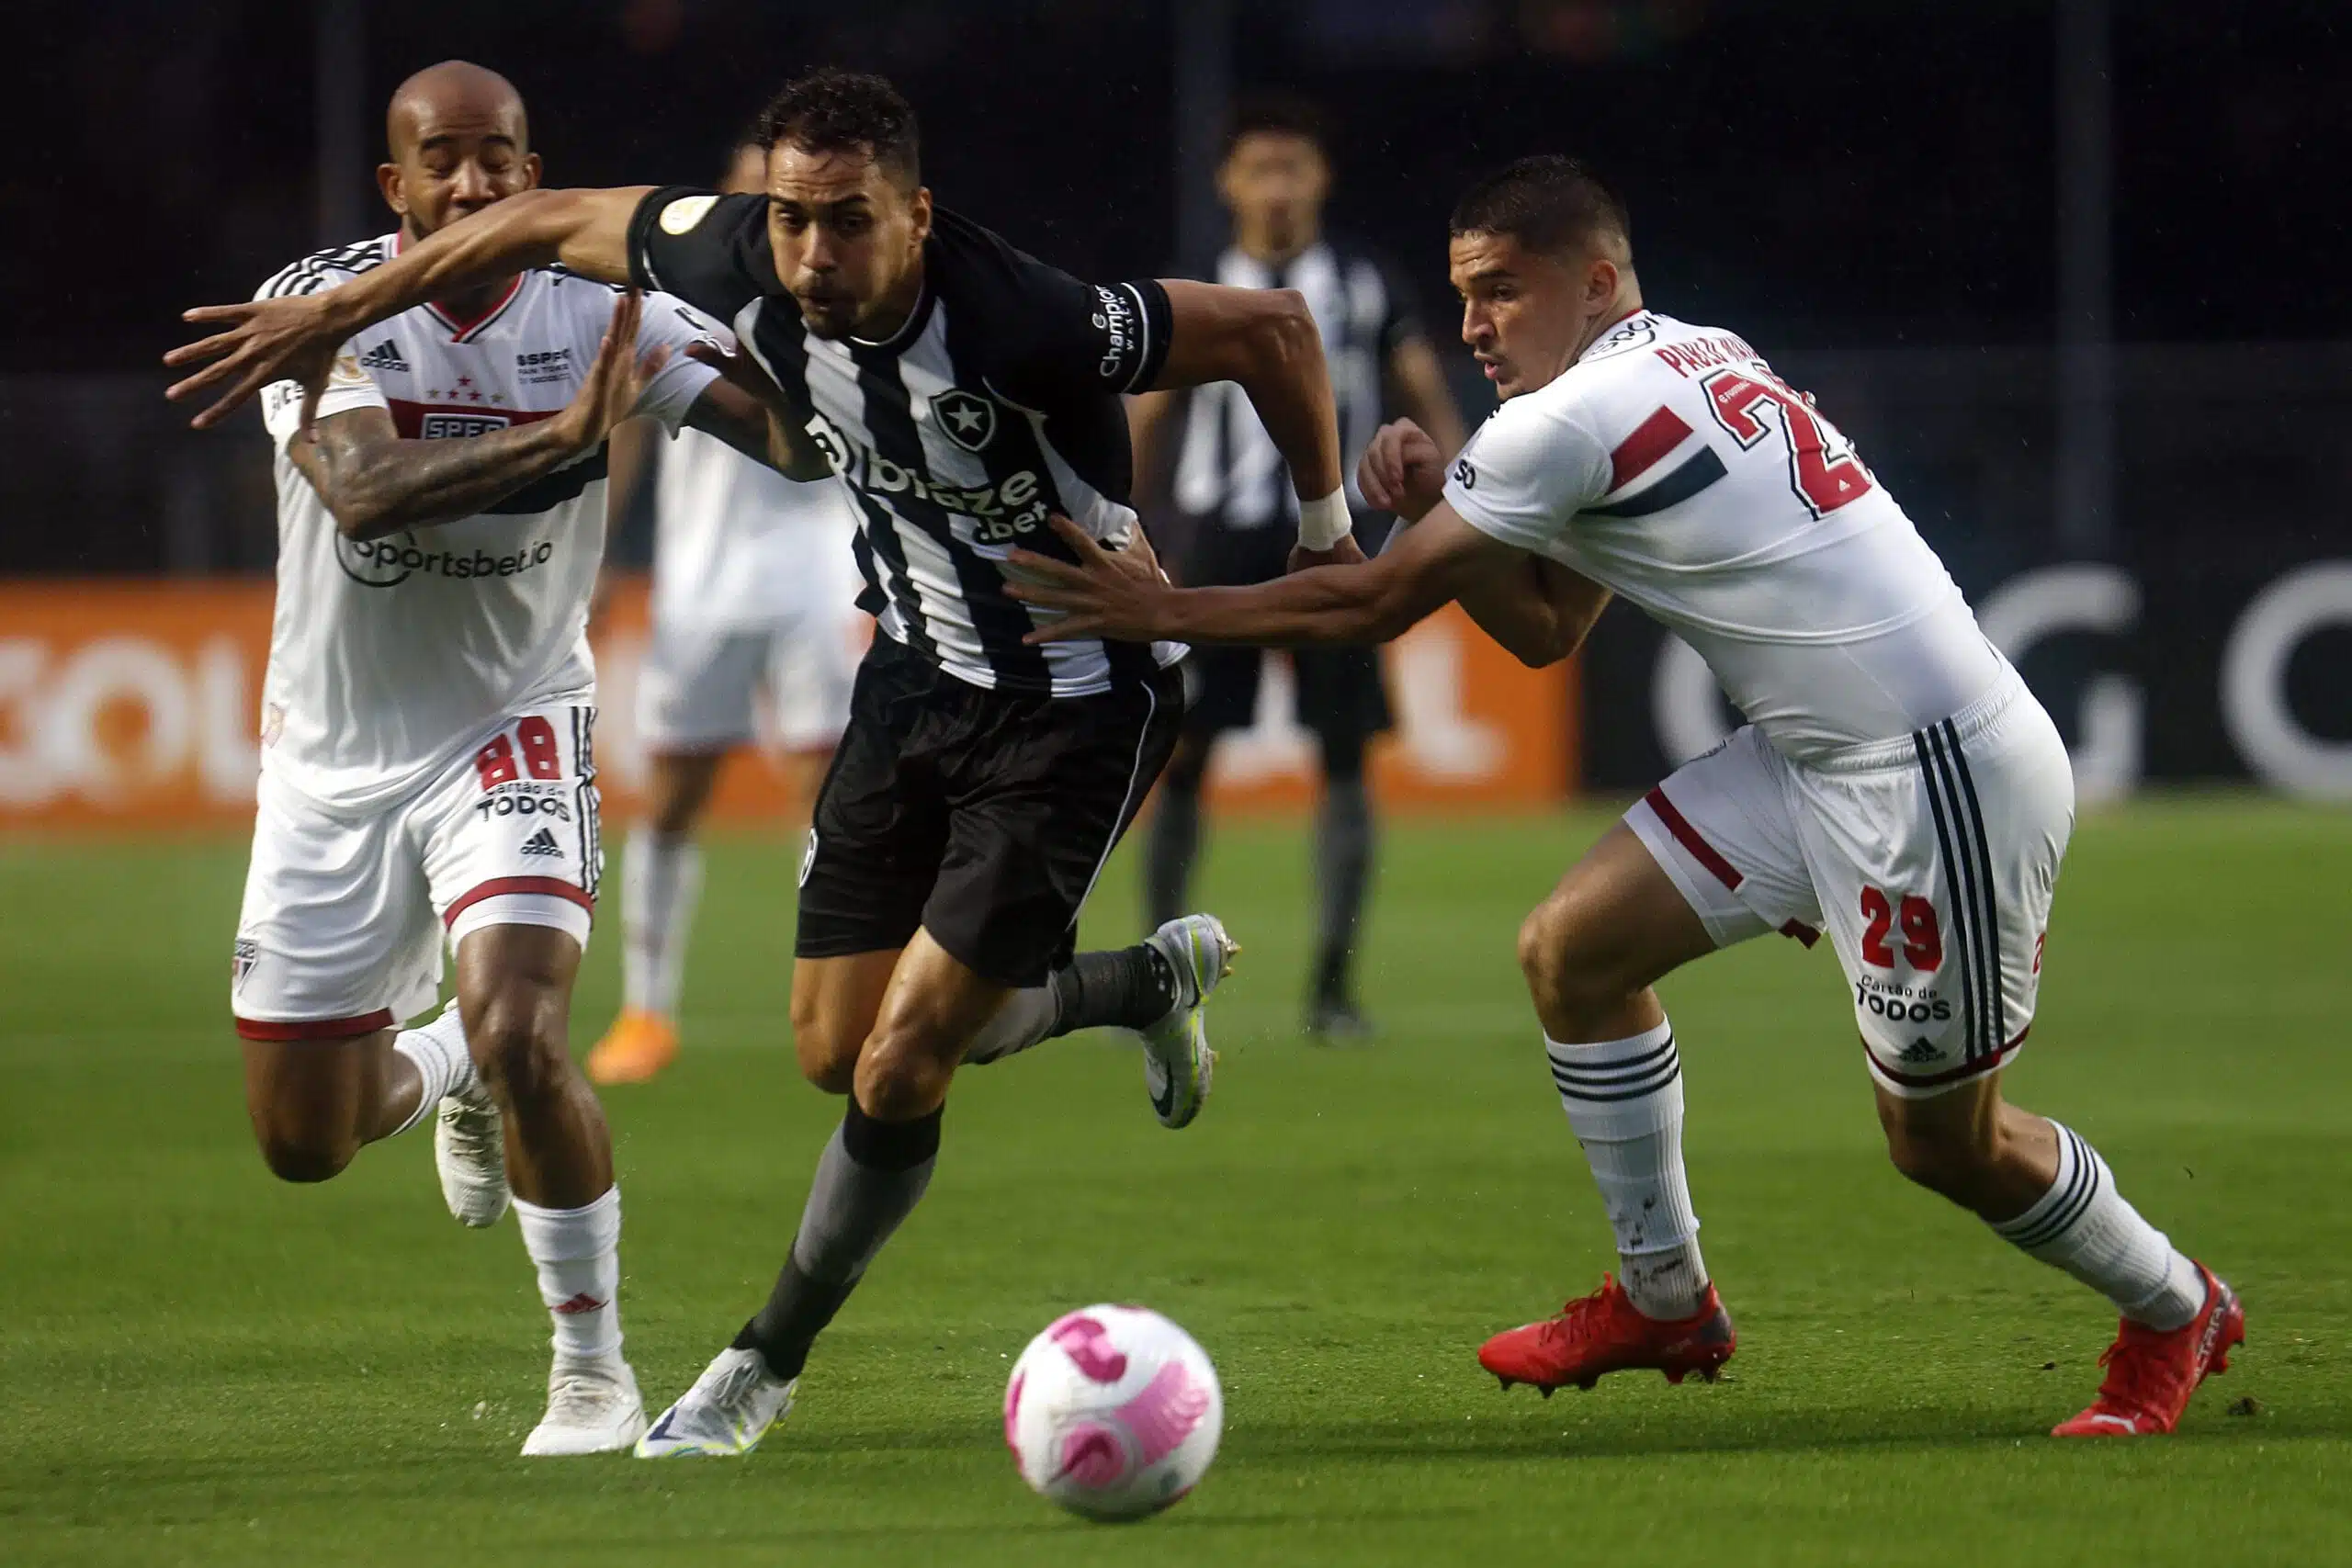 Em tarde de chuva intensa no Morumbi, São Paulo é derrotado pelo Botafogo